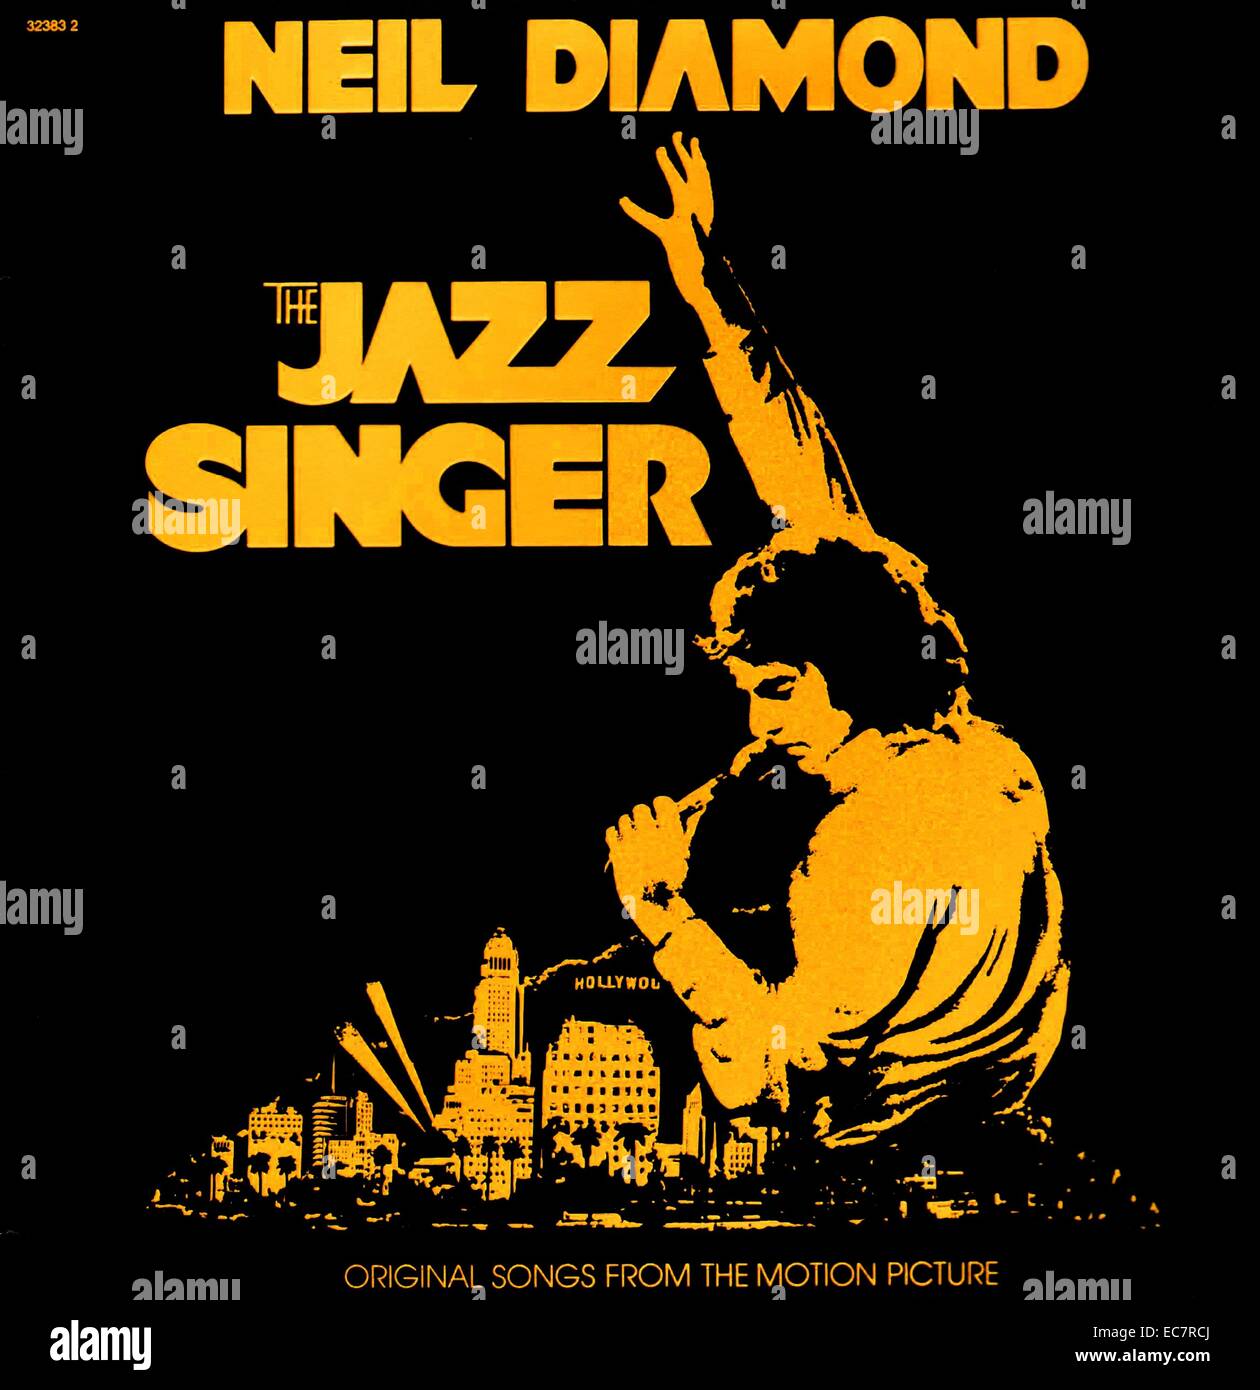 Le Chanteur de jazz est un album de Neil Diamond qui a été publié en 1980. C'était la bande originale du remake du film de 1980 du même nom. Bien que le film bombardé, l'album se vend à plus de 5 millions d'exemplaires et a été le plus gros diamant jamais vente d'album aux États-Unis. Banque D'Images